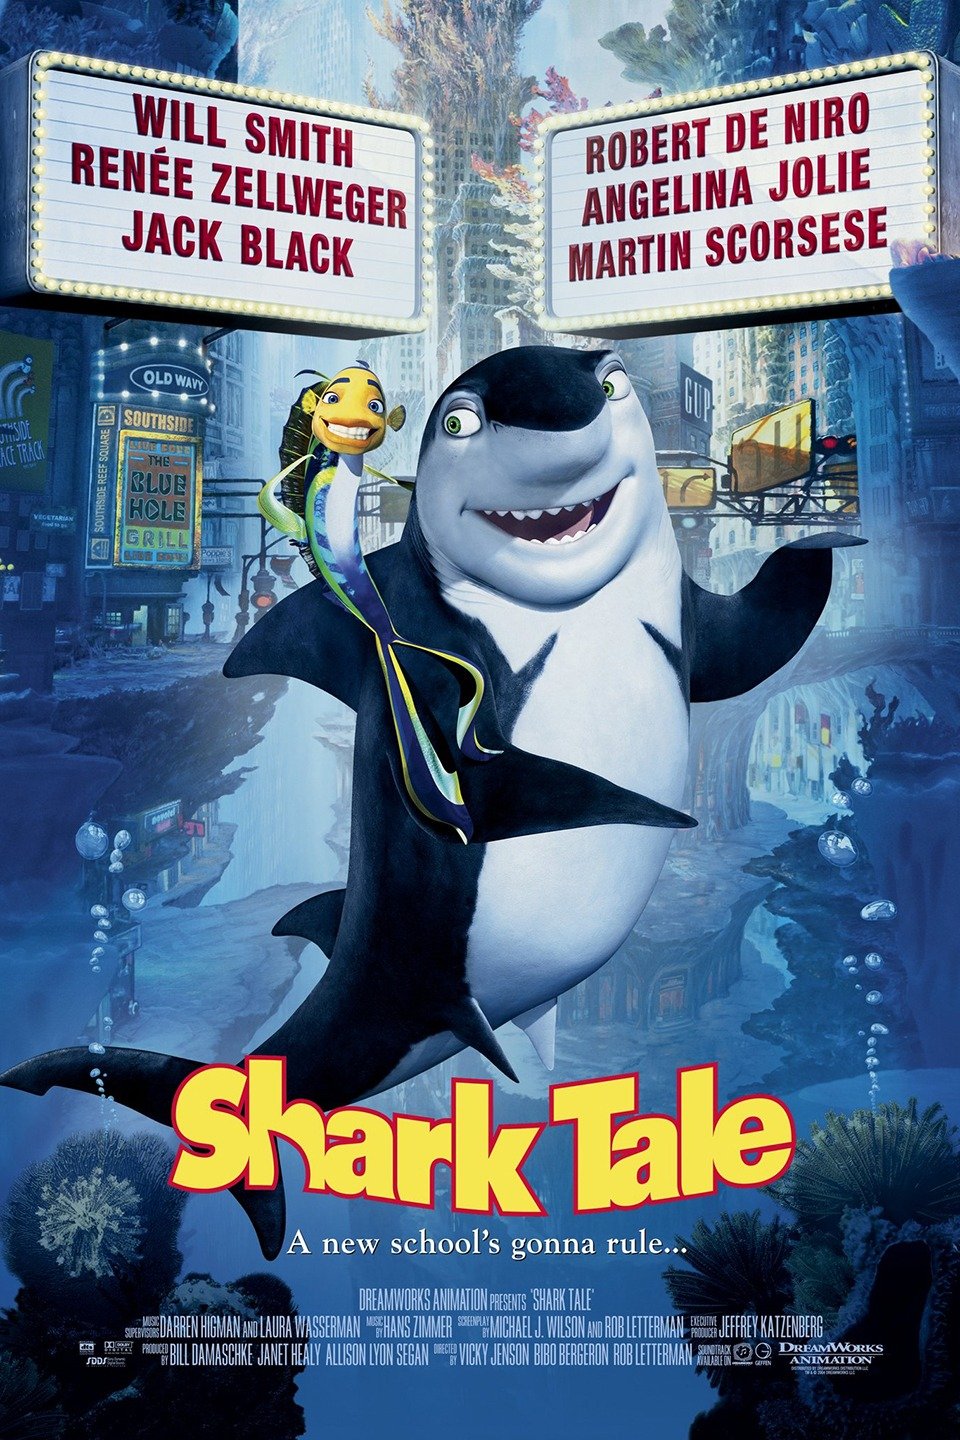 [MINI-HD] Shark Tale (2004) เรื่องของปลาจอมวุ่นชุลมุนป่วนสมุทร [1080p] [พากย์ไทย 5.1 + เสียงอังกฤษ 5.1] [บรรยายอังกฤษ] [เสียงไทย + ซับอังกฤษ] [OPENLOAD]